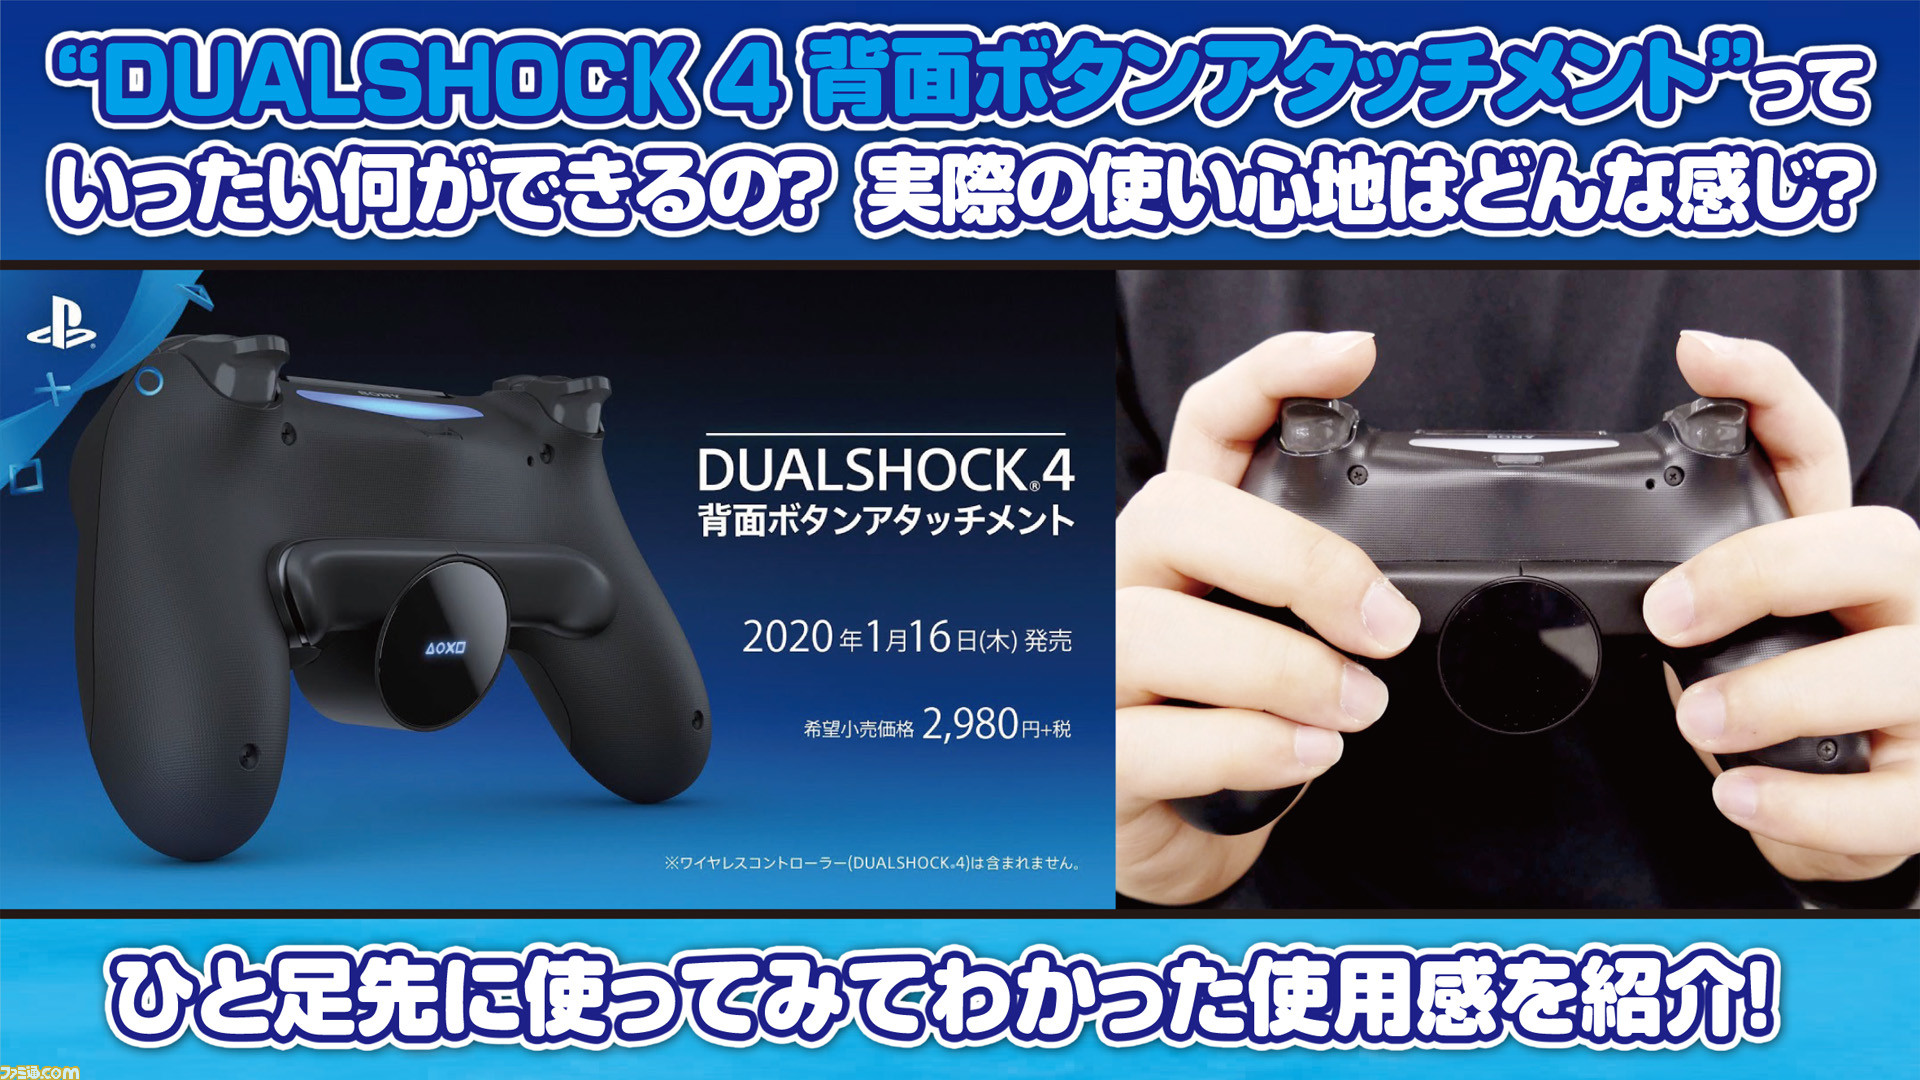 22500円 【希望者のみラッピング無料】 PS4 DUALSHOCK4 背面ボタンアタッチメント 新品未使用 10個セット